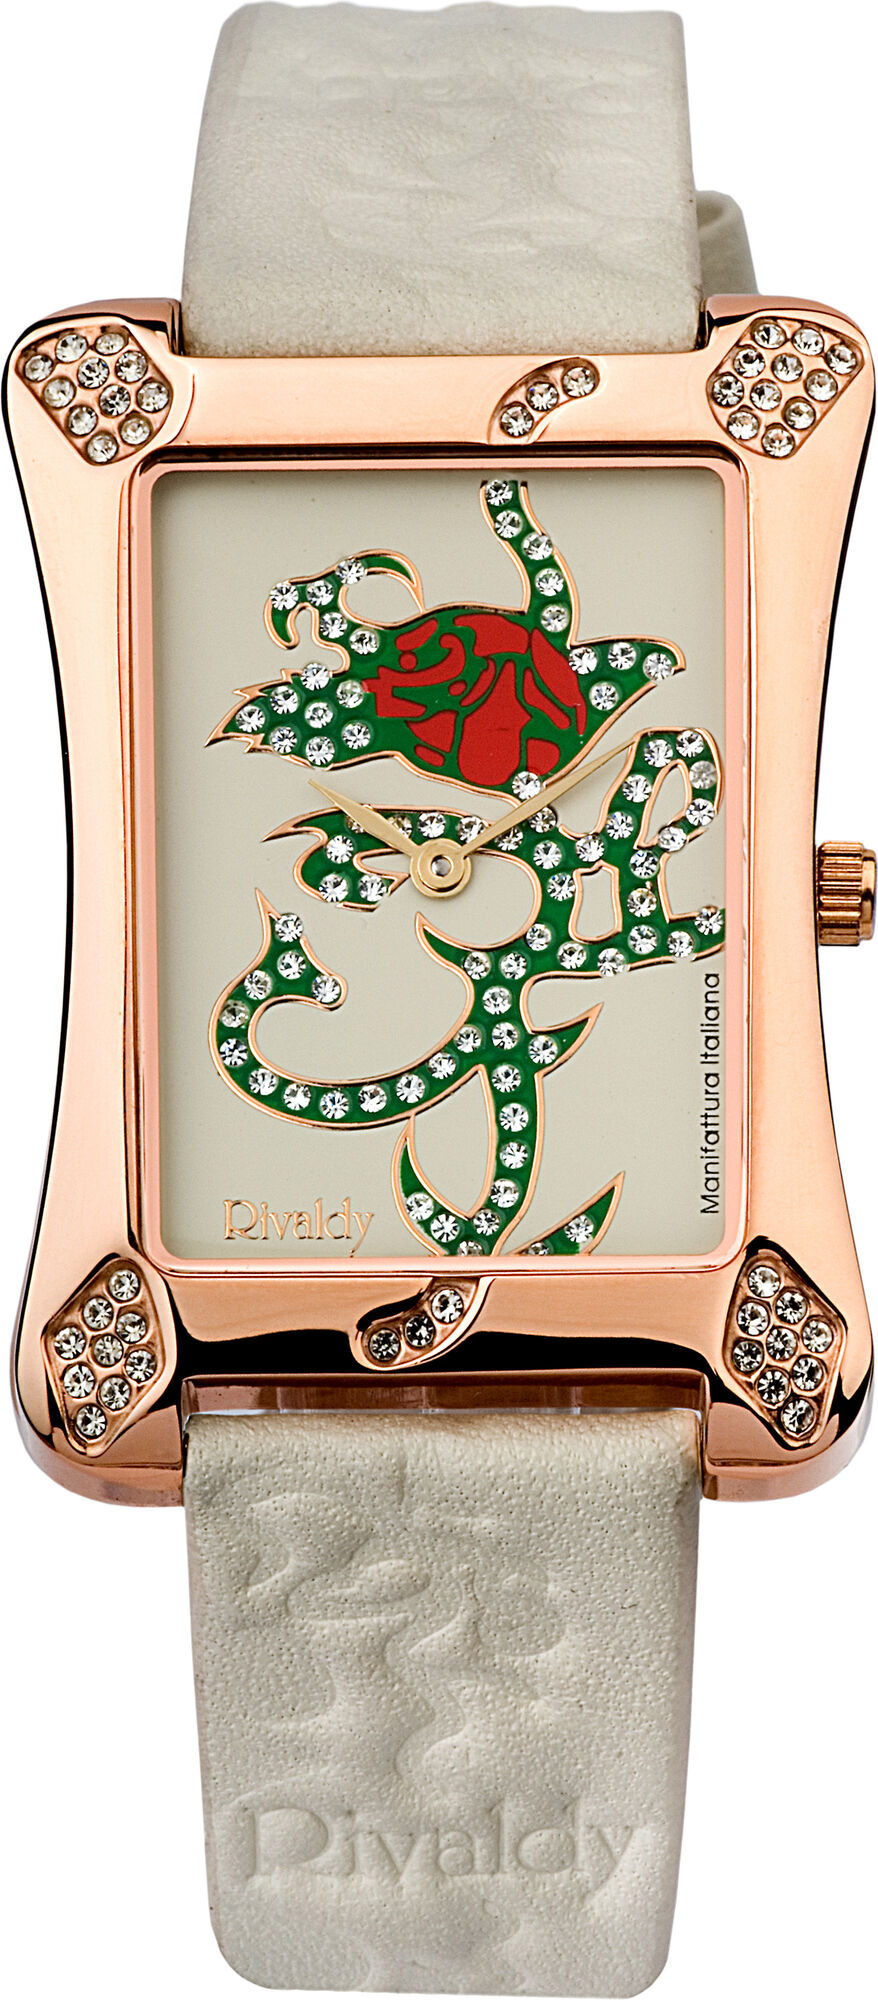 Женские часы Rivaldy 1446-110